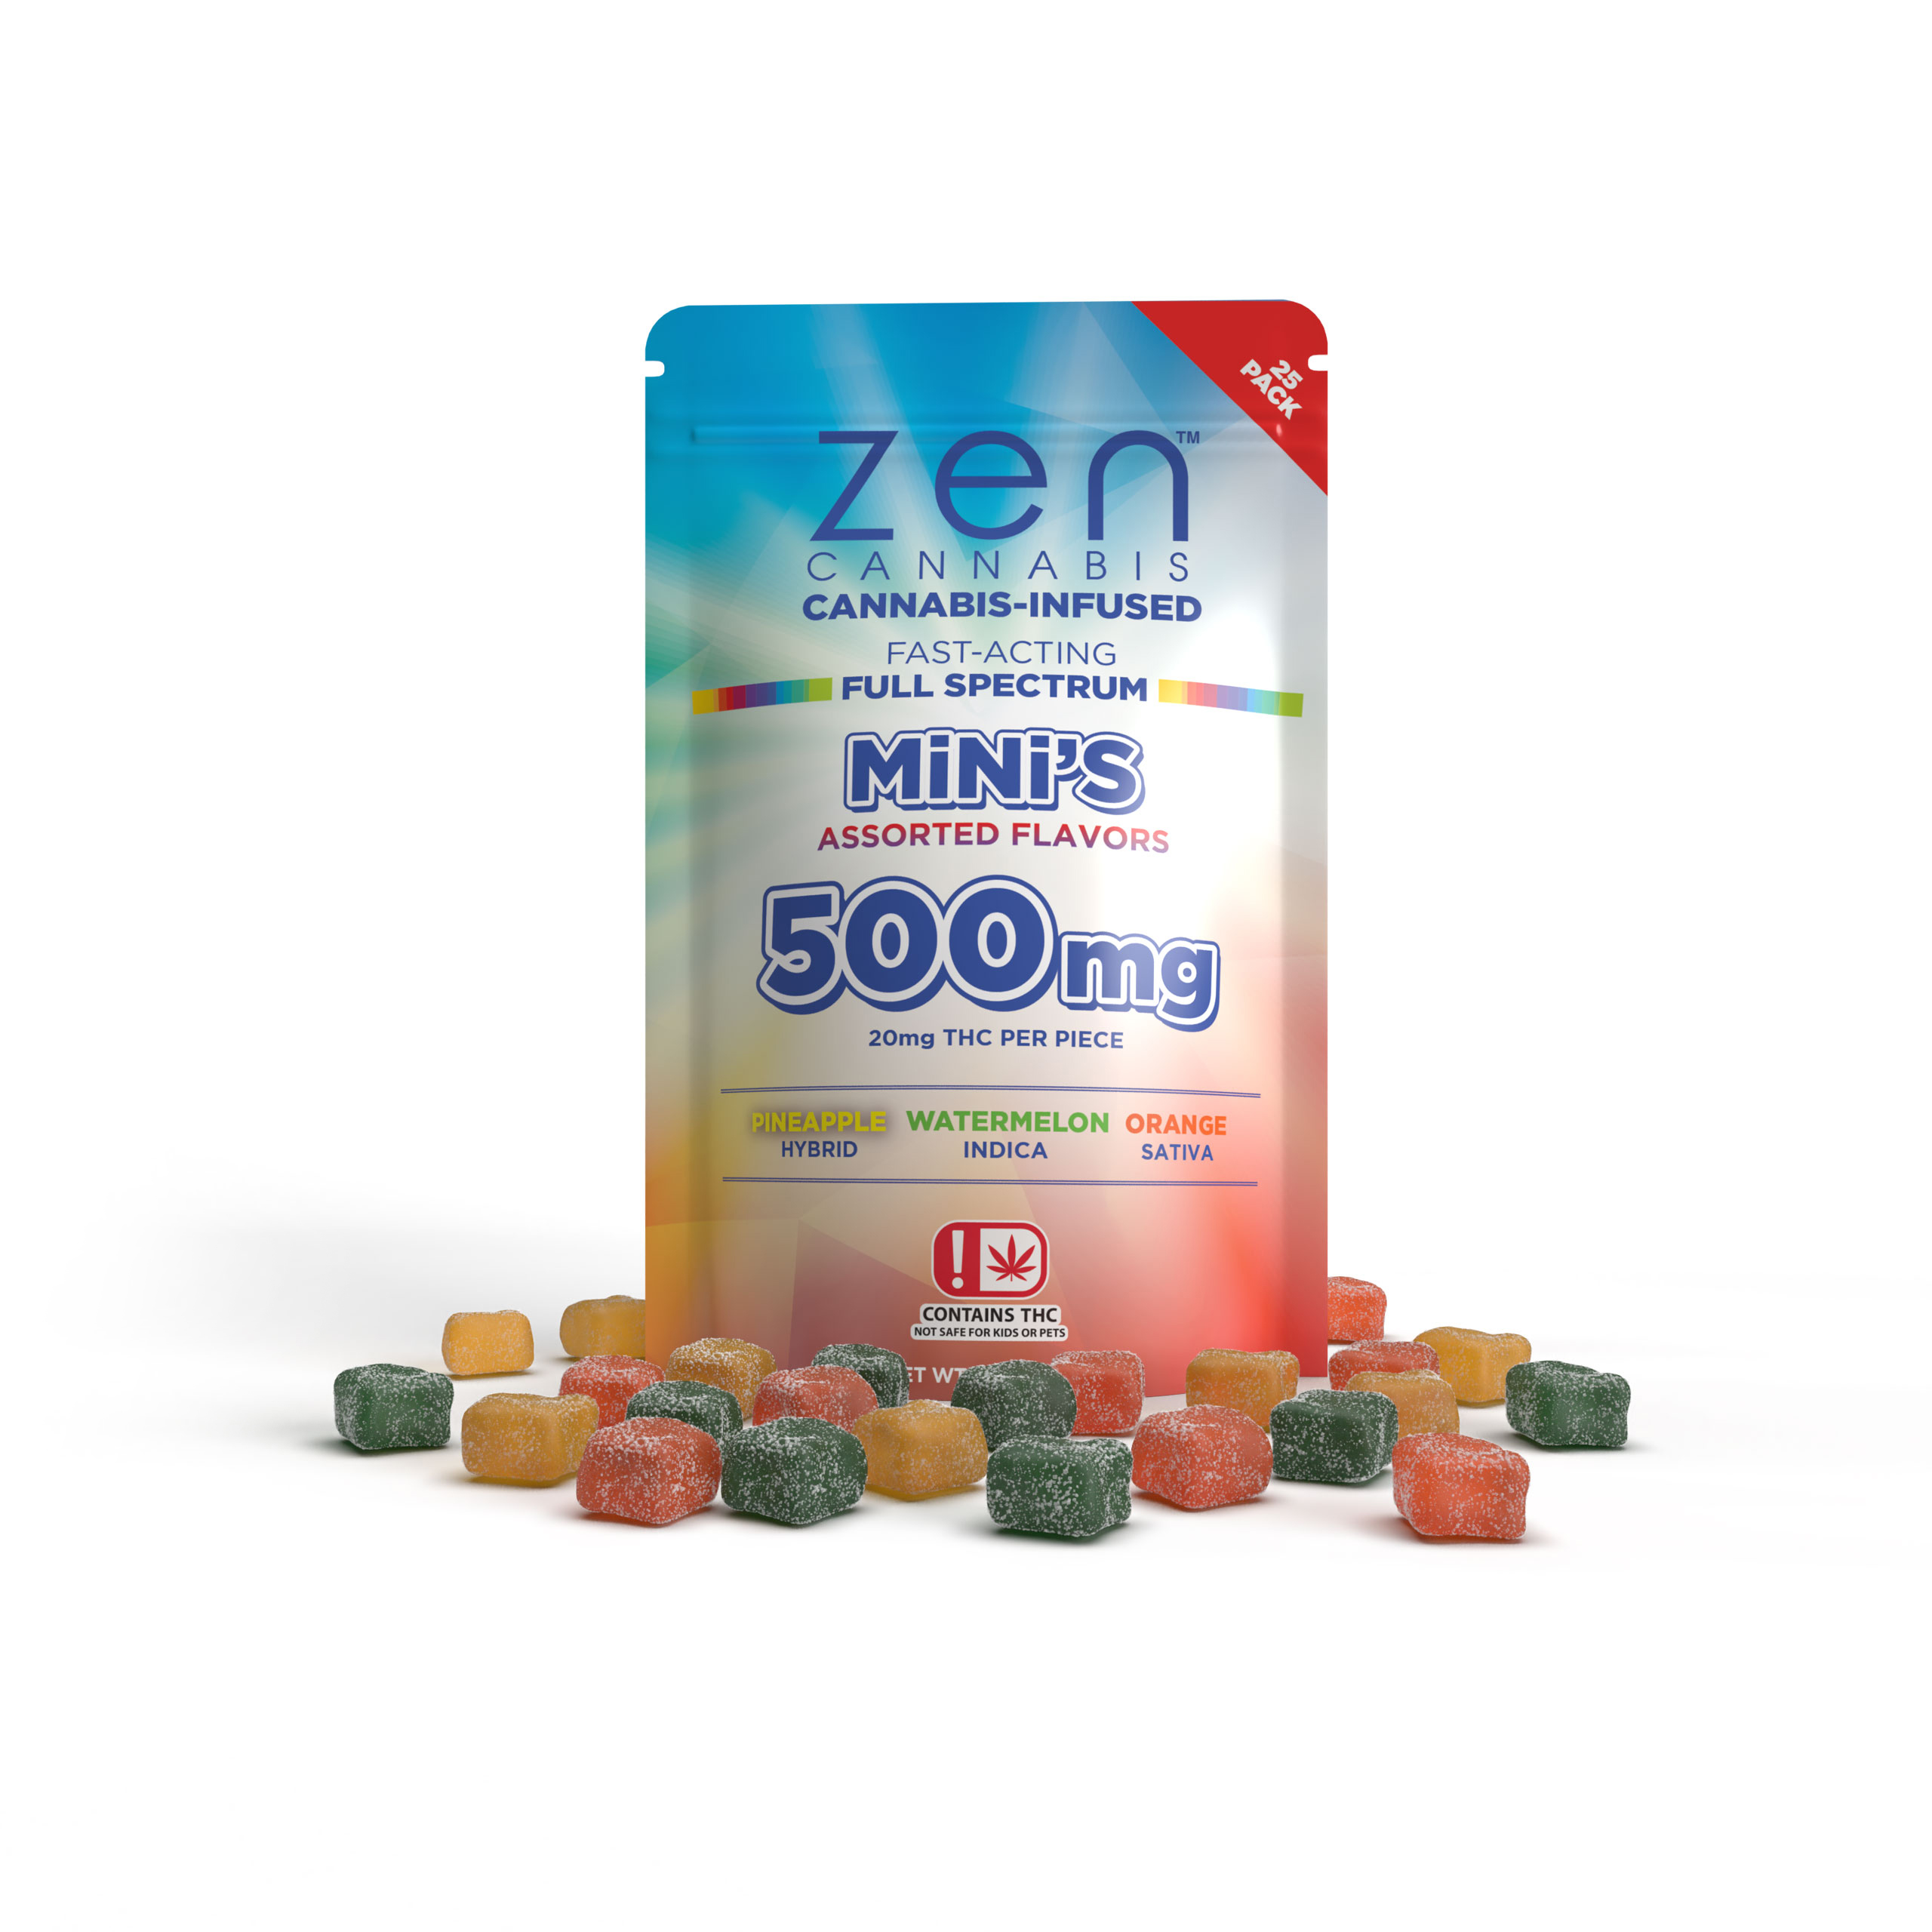 Zen cannabis mini's bag gummies